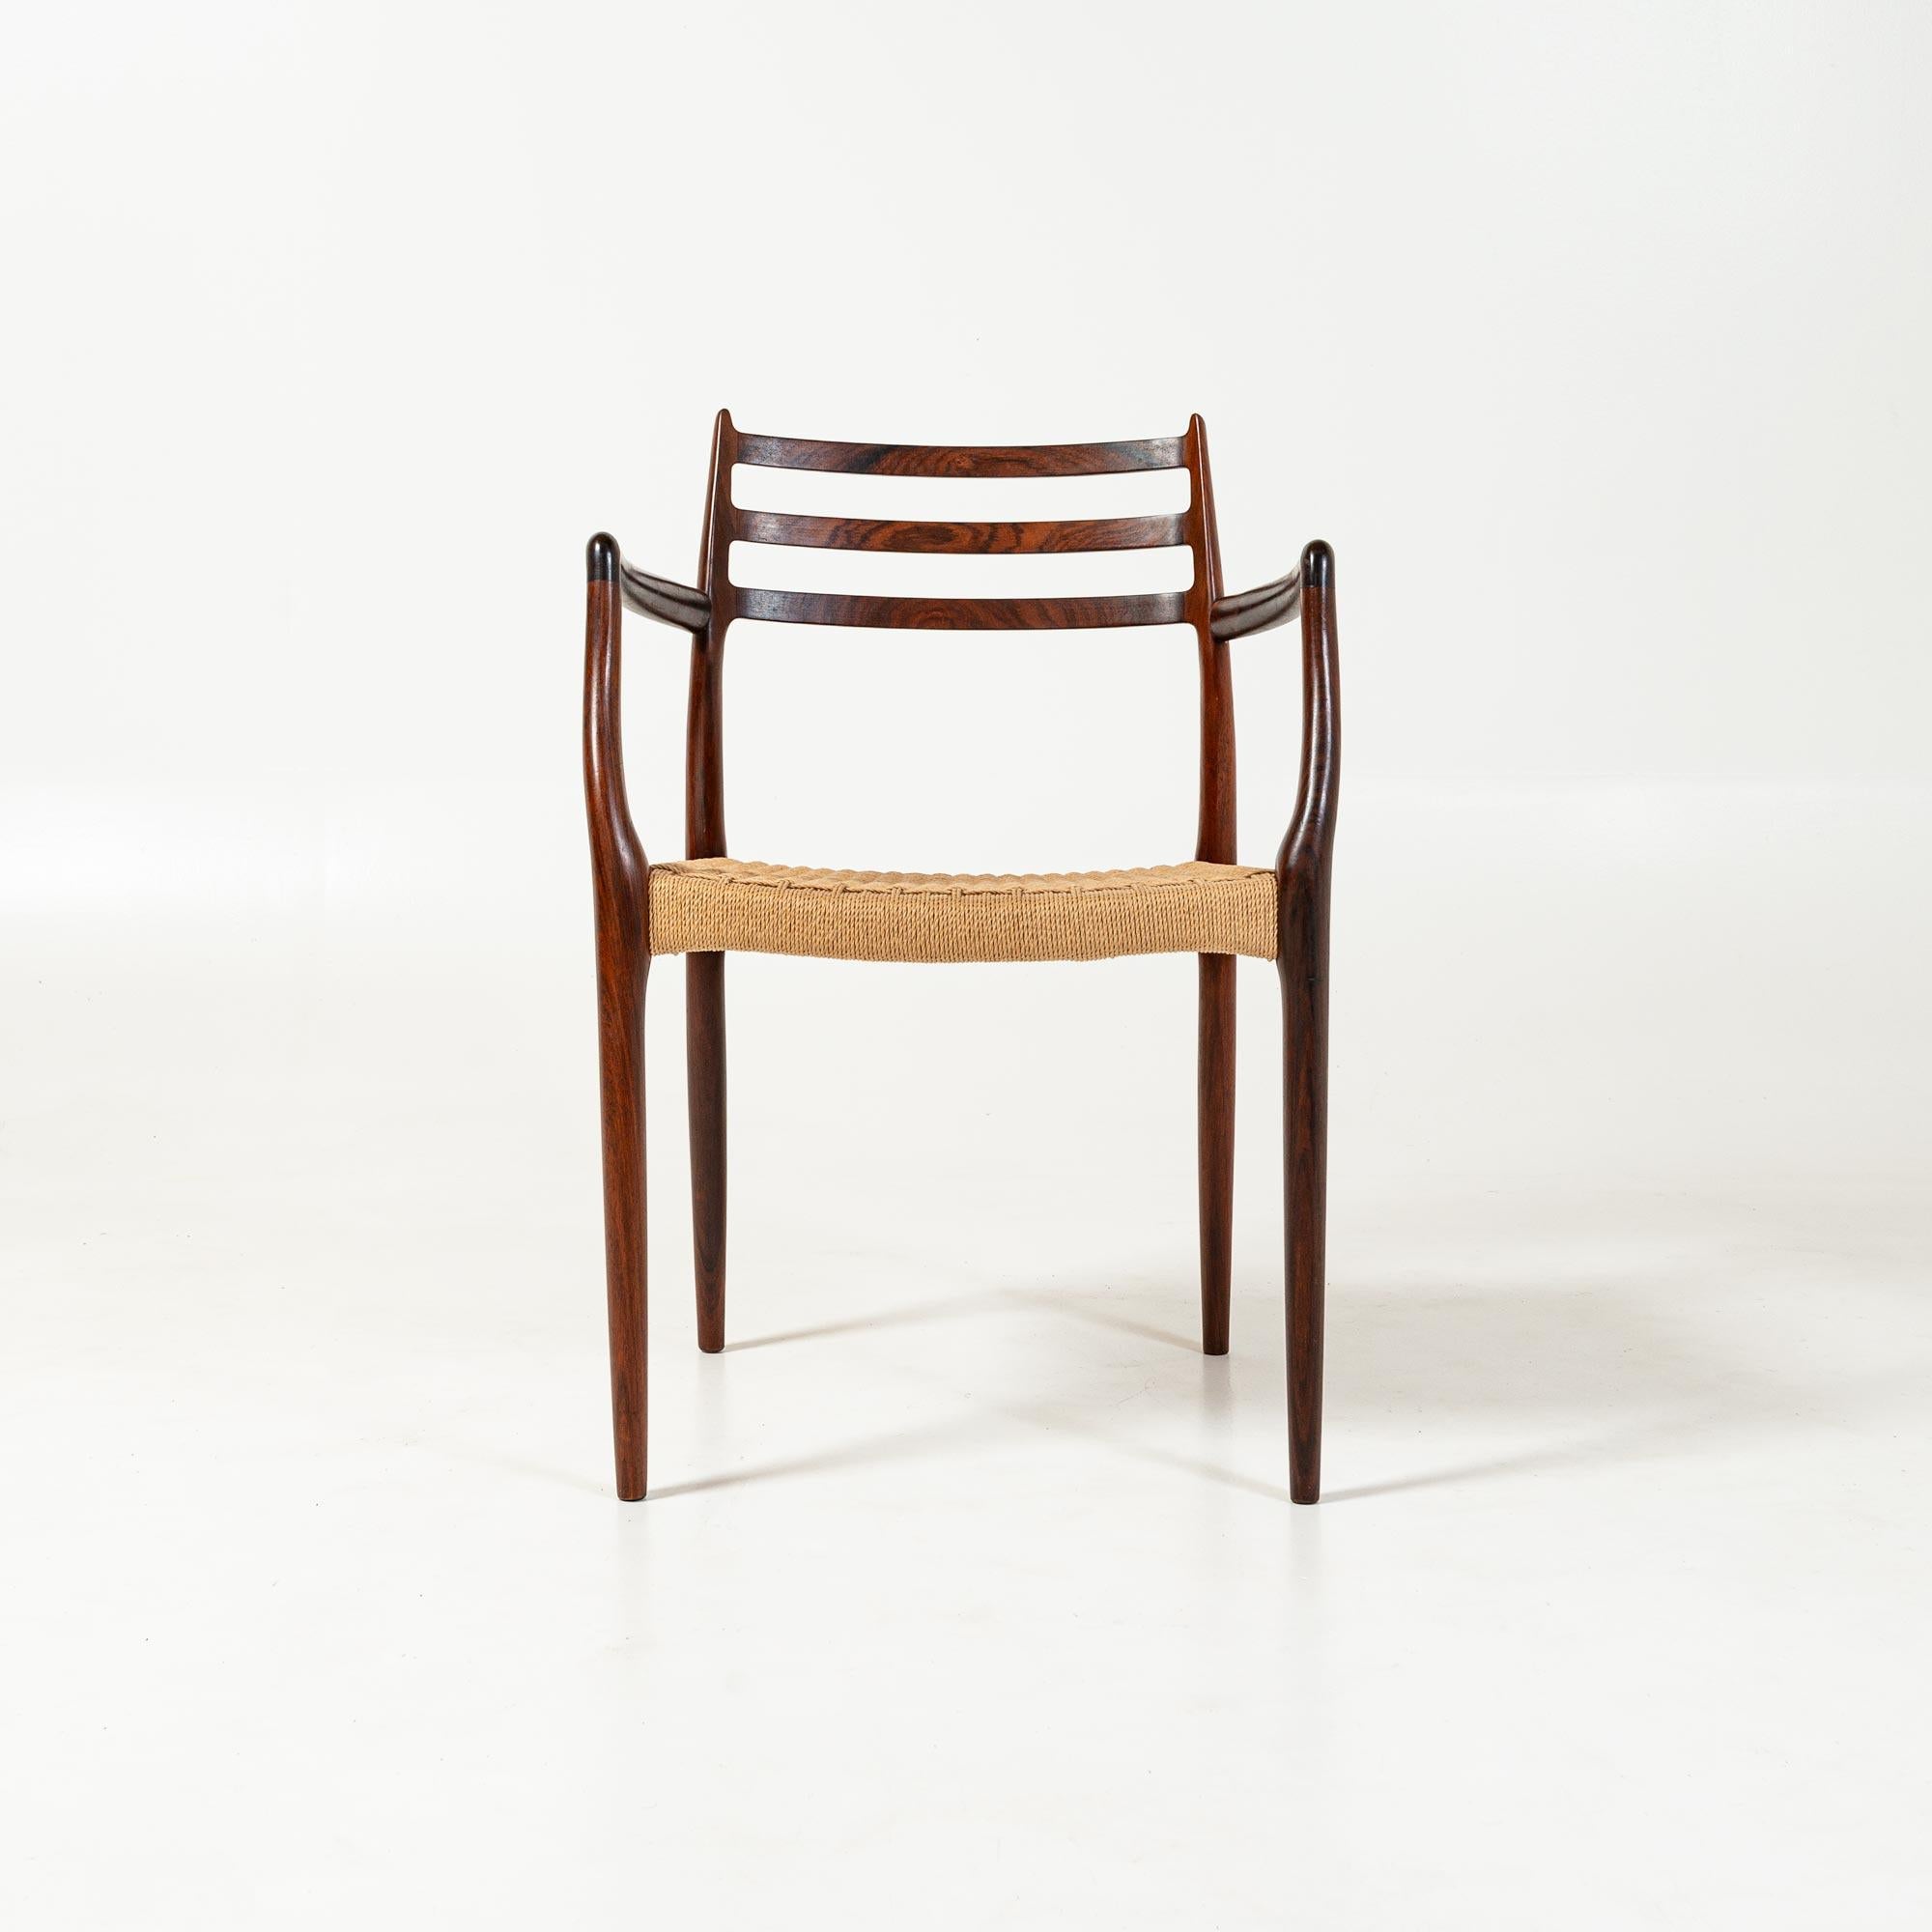 Probablement la chaise Moller la plus recherchée et la plus rare, surtout en bois de rose. Ce fauteuil modèle 62 a été conçu par Niels Otto Møller. Produit par J.L Møllers møbelfabrik au Danemark, il est en excellent état, avec une usure minimale